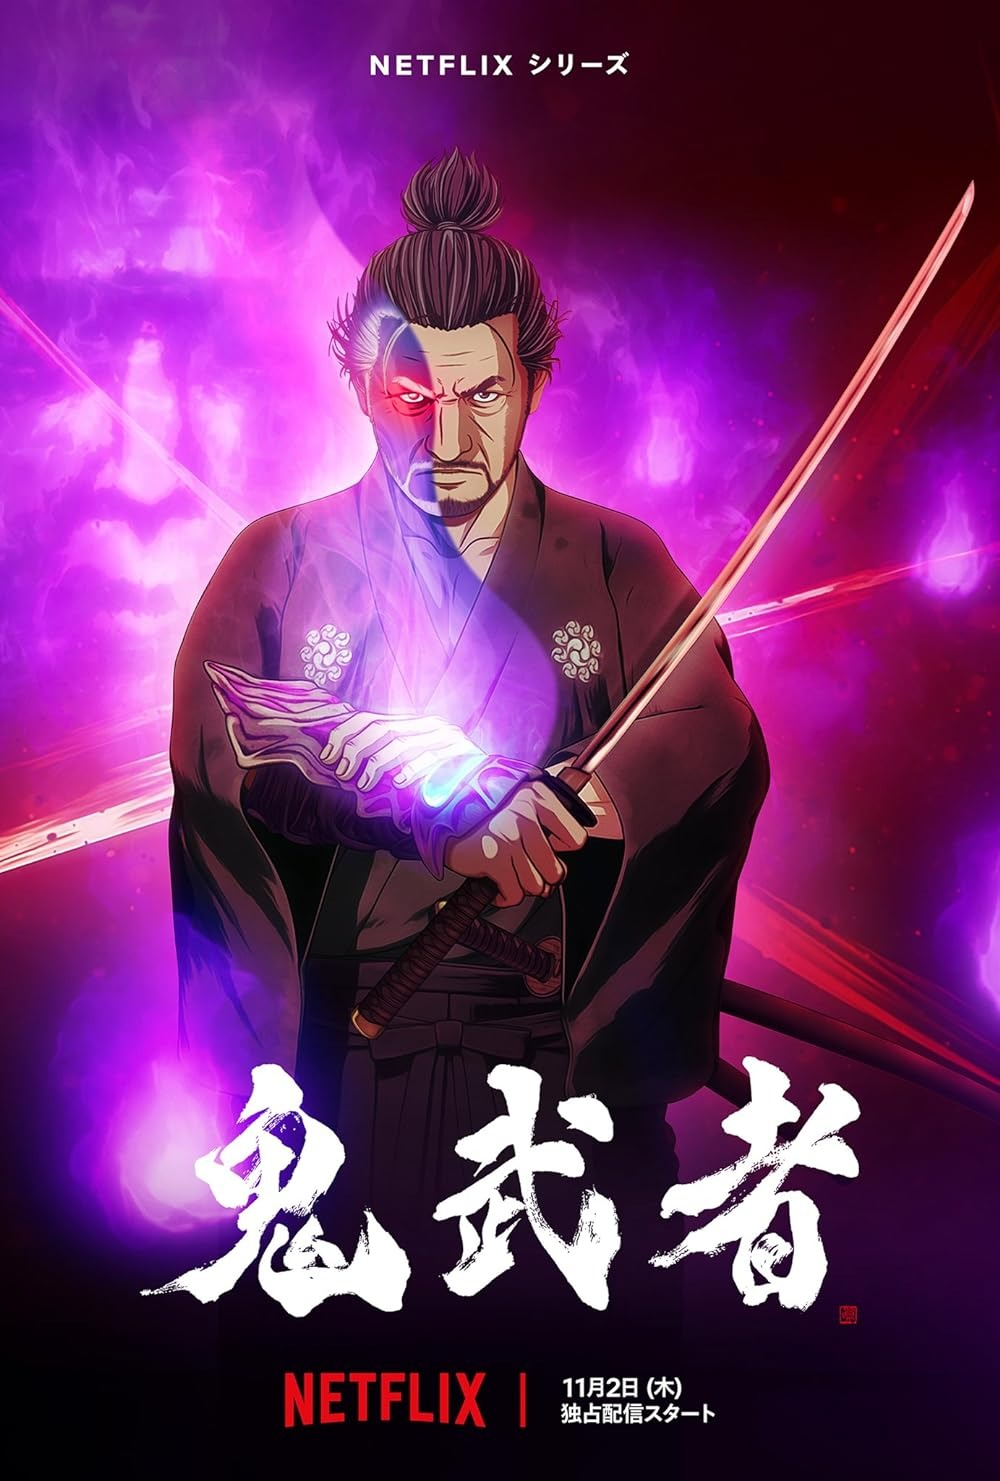 Netflix Onimusha Anime Cover